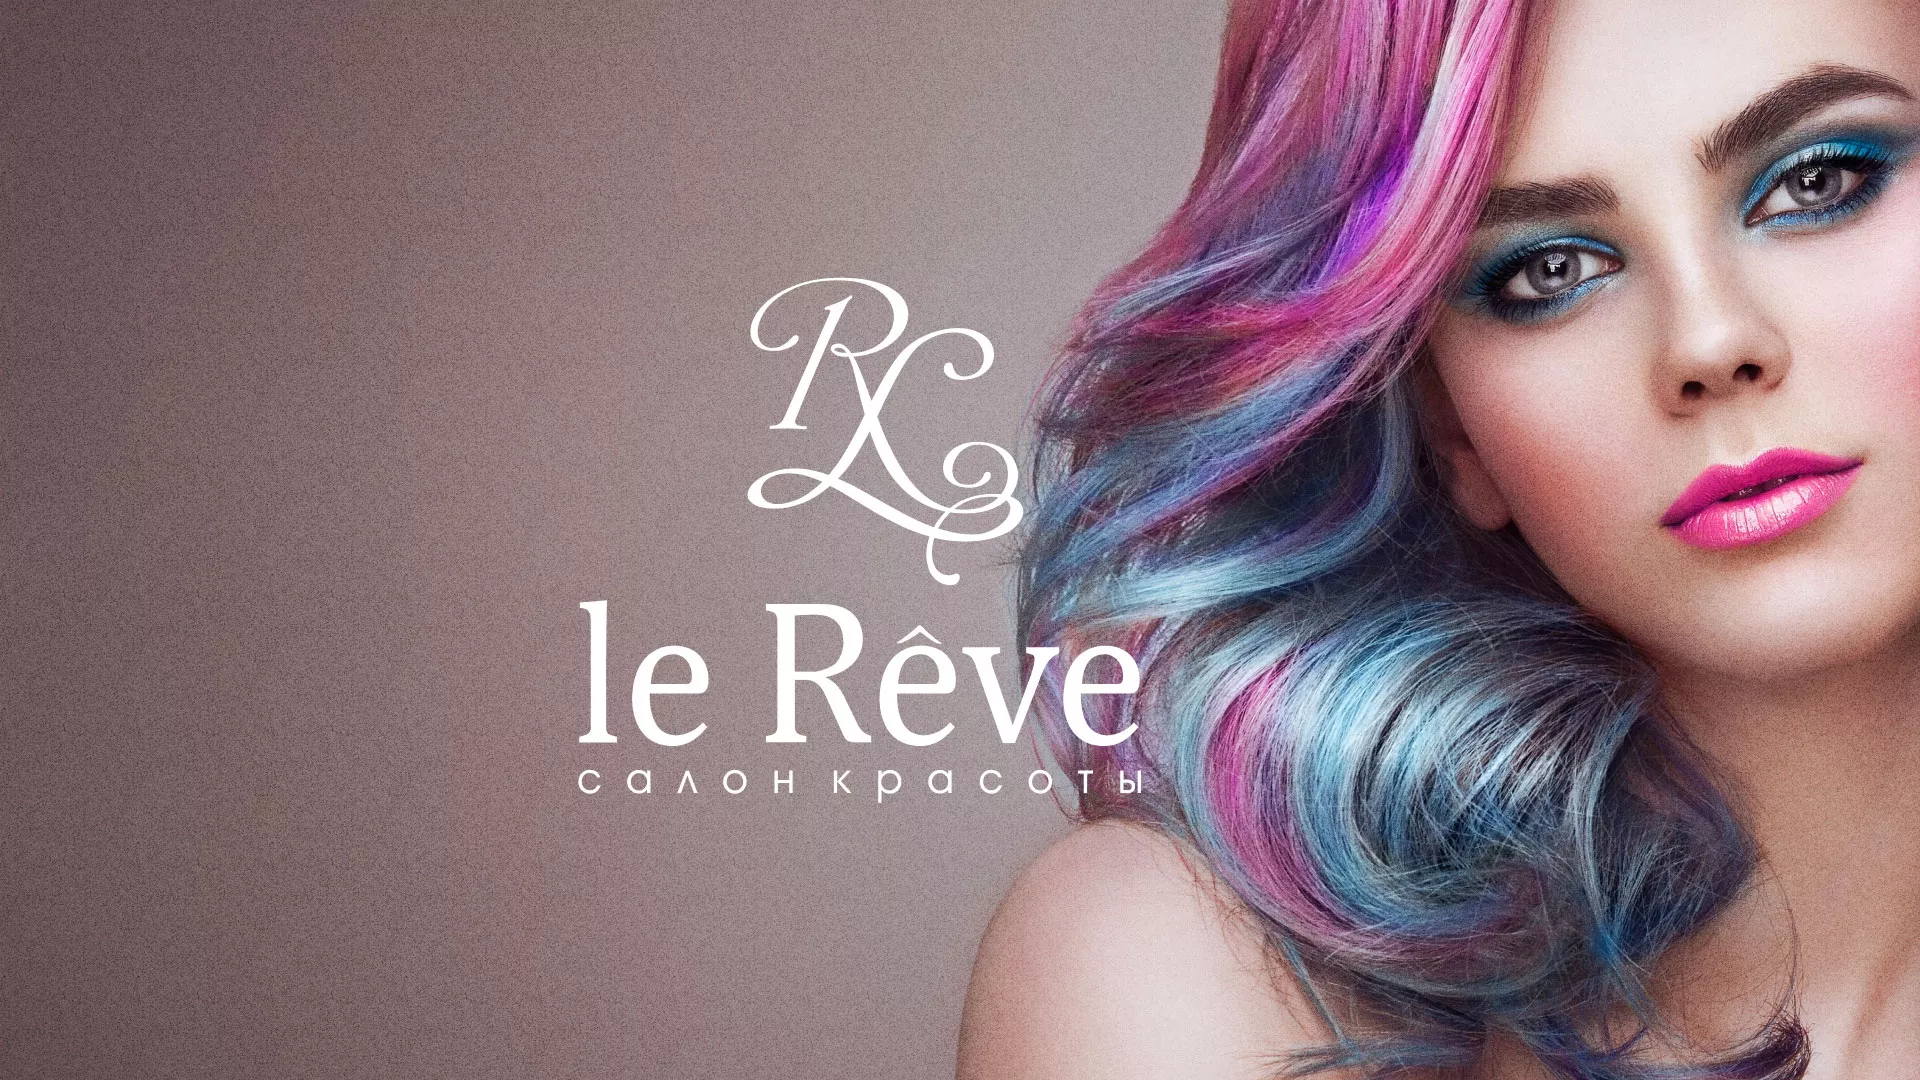 Создание сайта для салона красоты «Le Reve» в Кинели